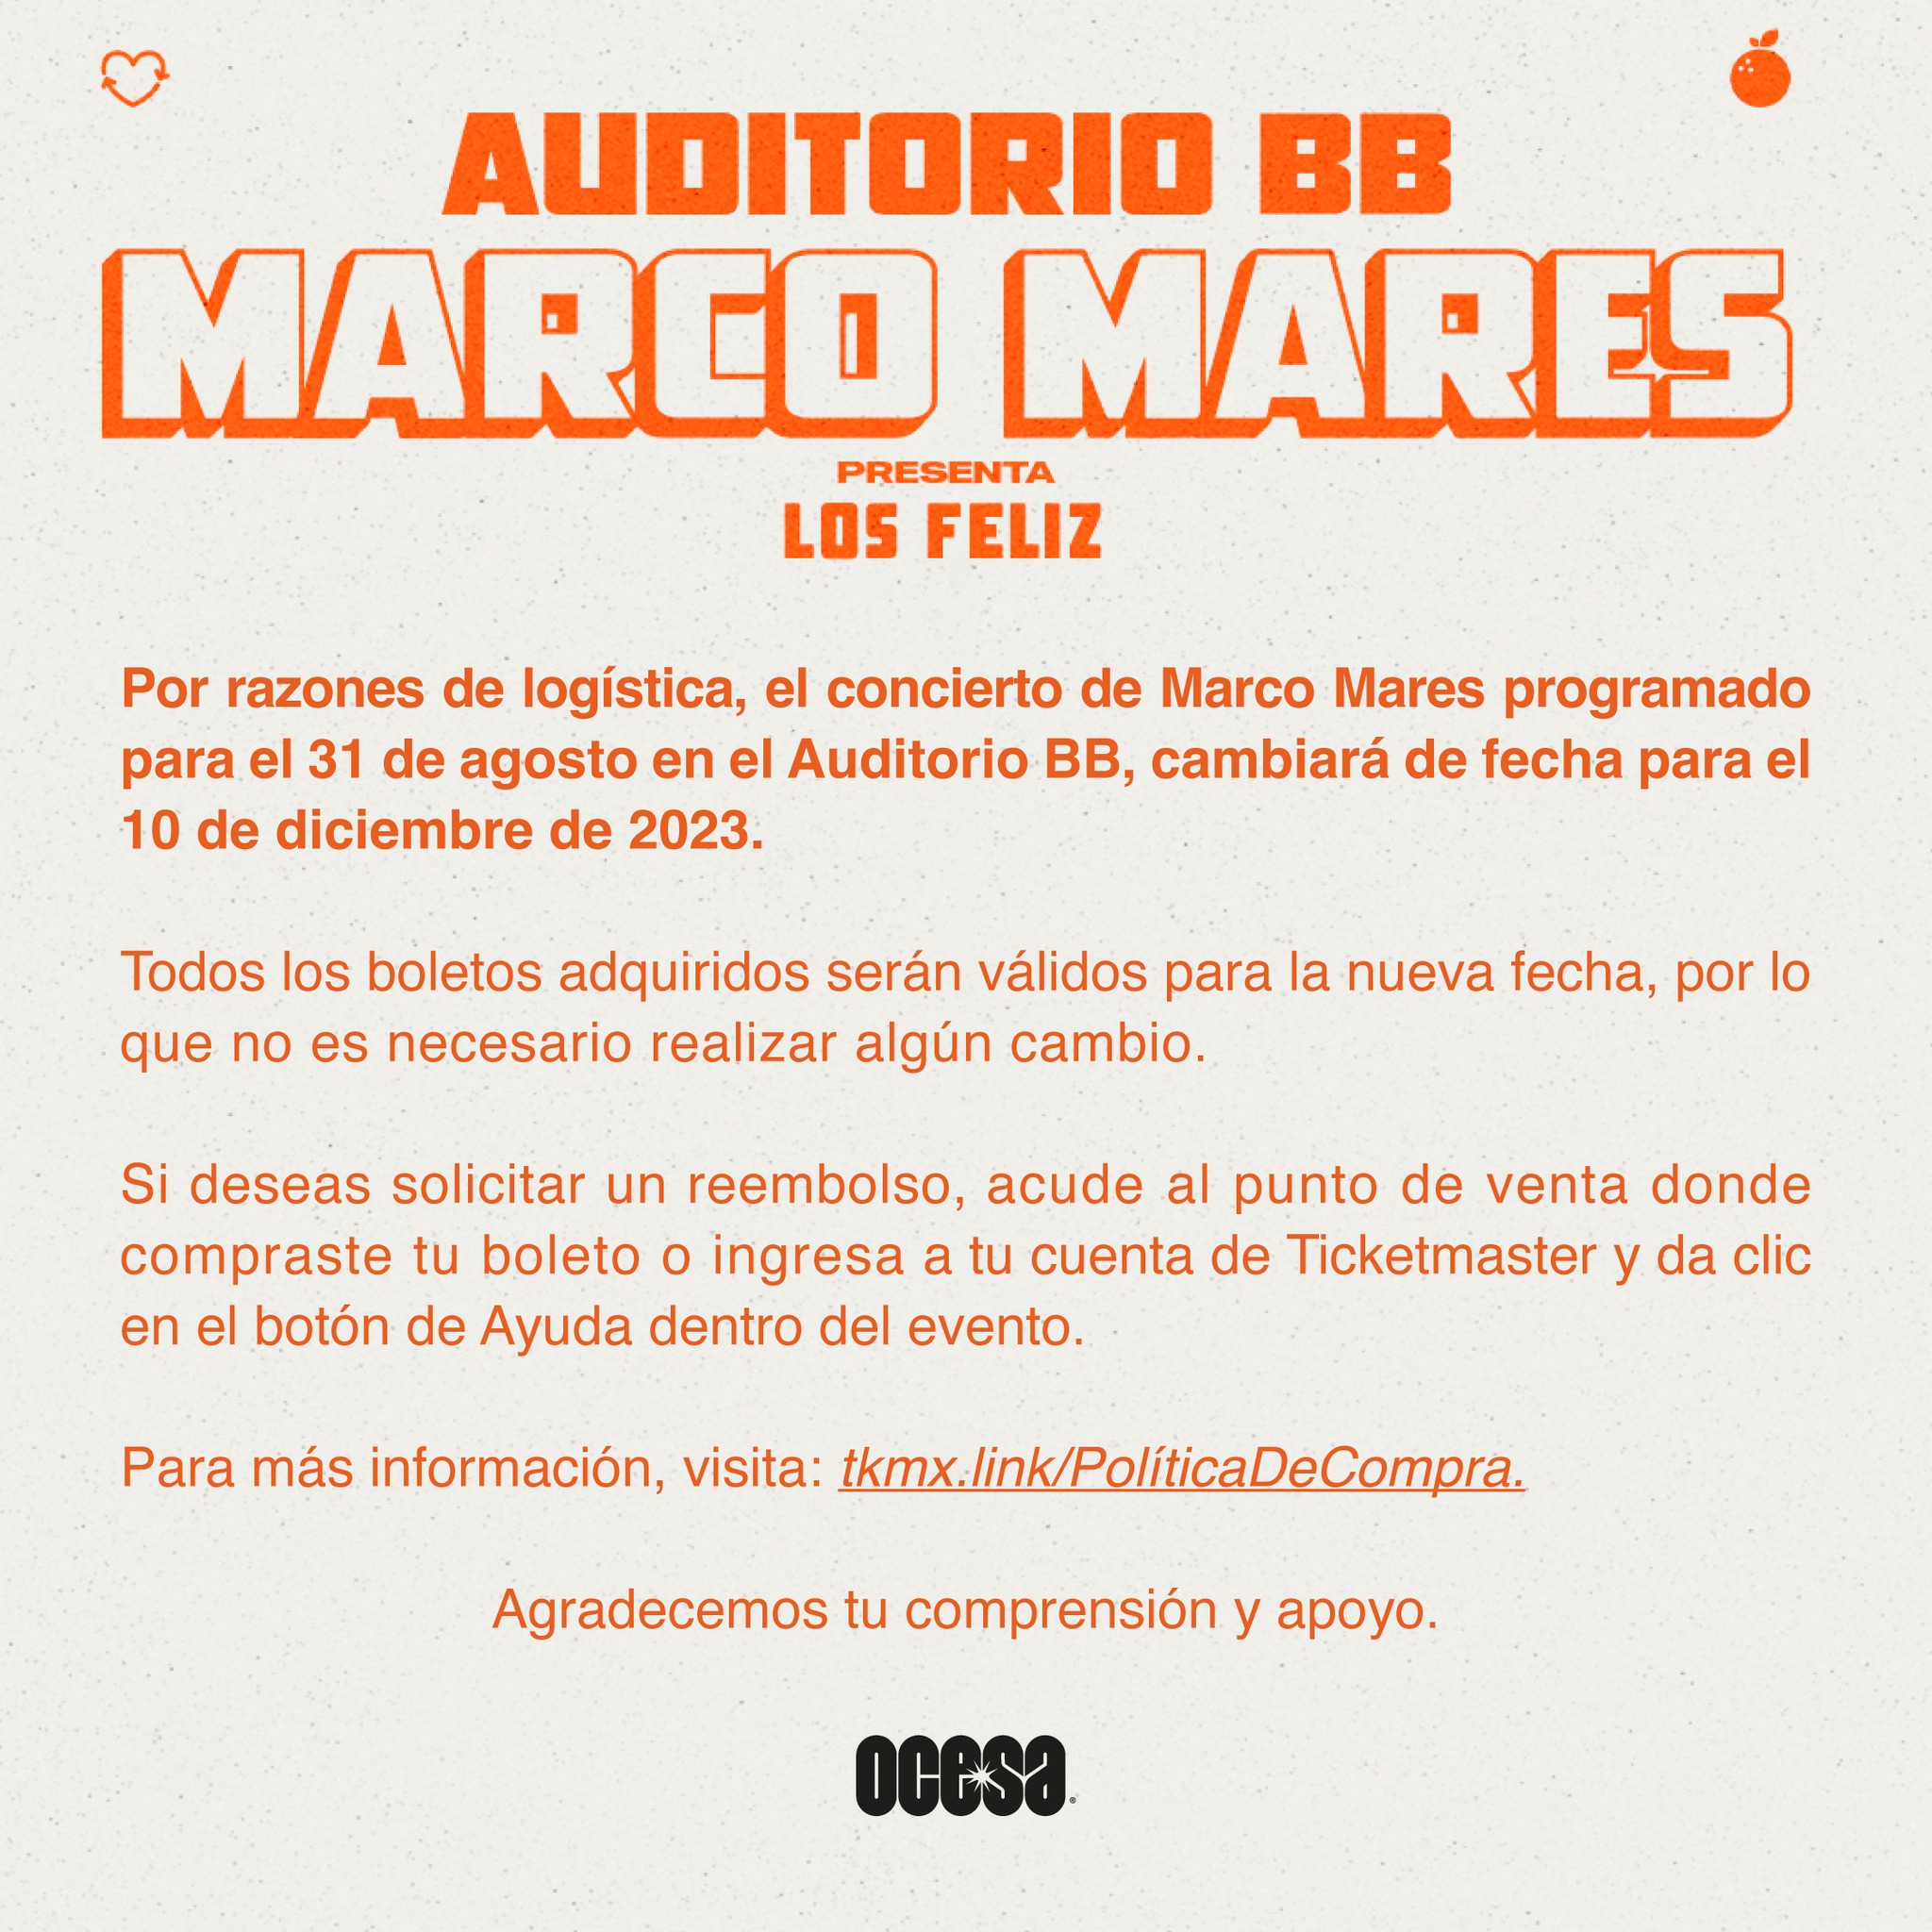 Marco Mares comunicado Auditorio BB